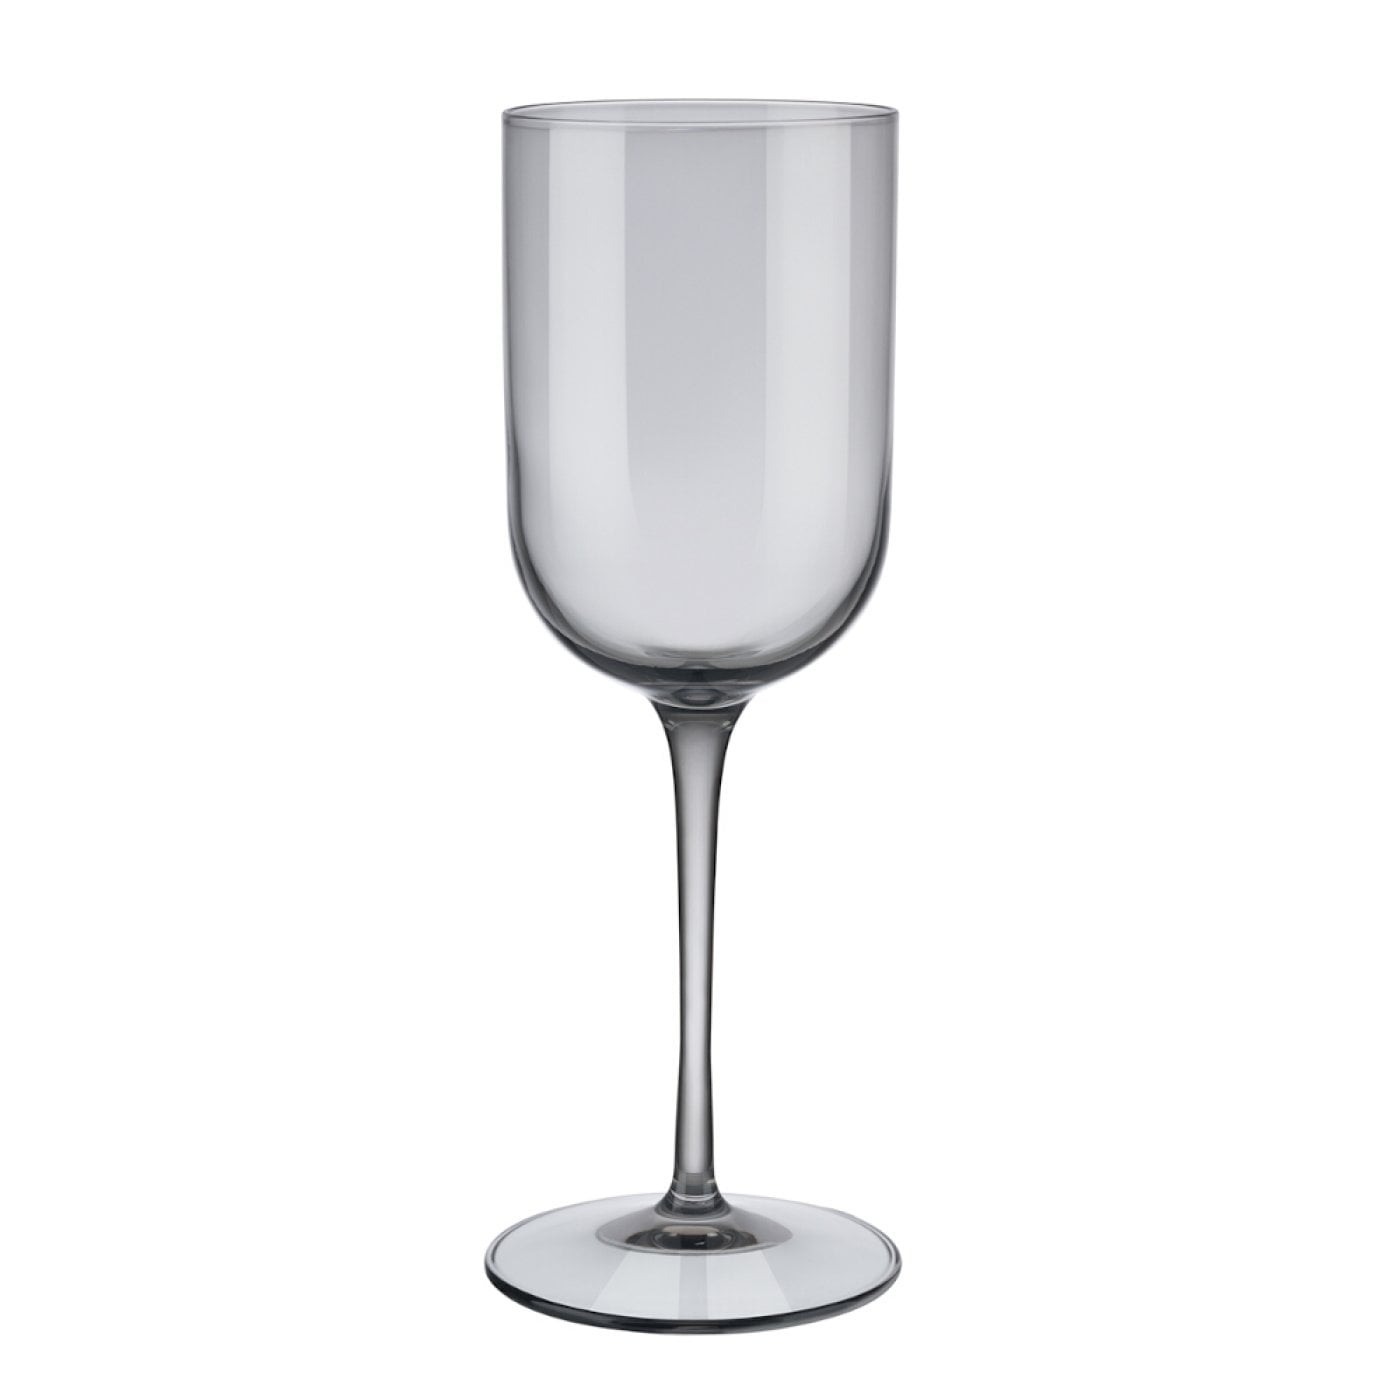 Blomus - witte wijn glazen Fuum - set van 4